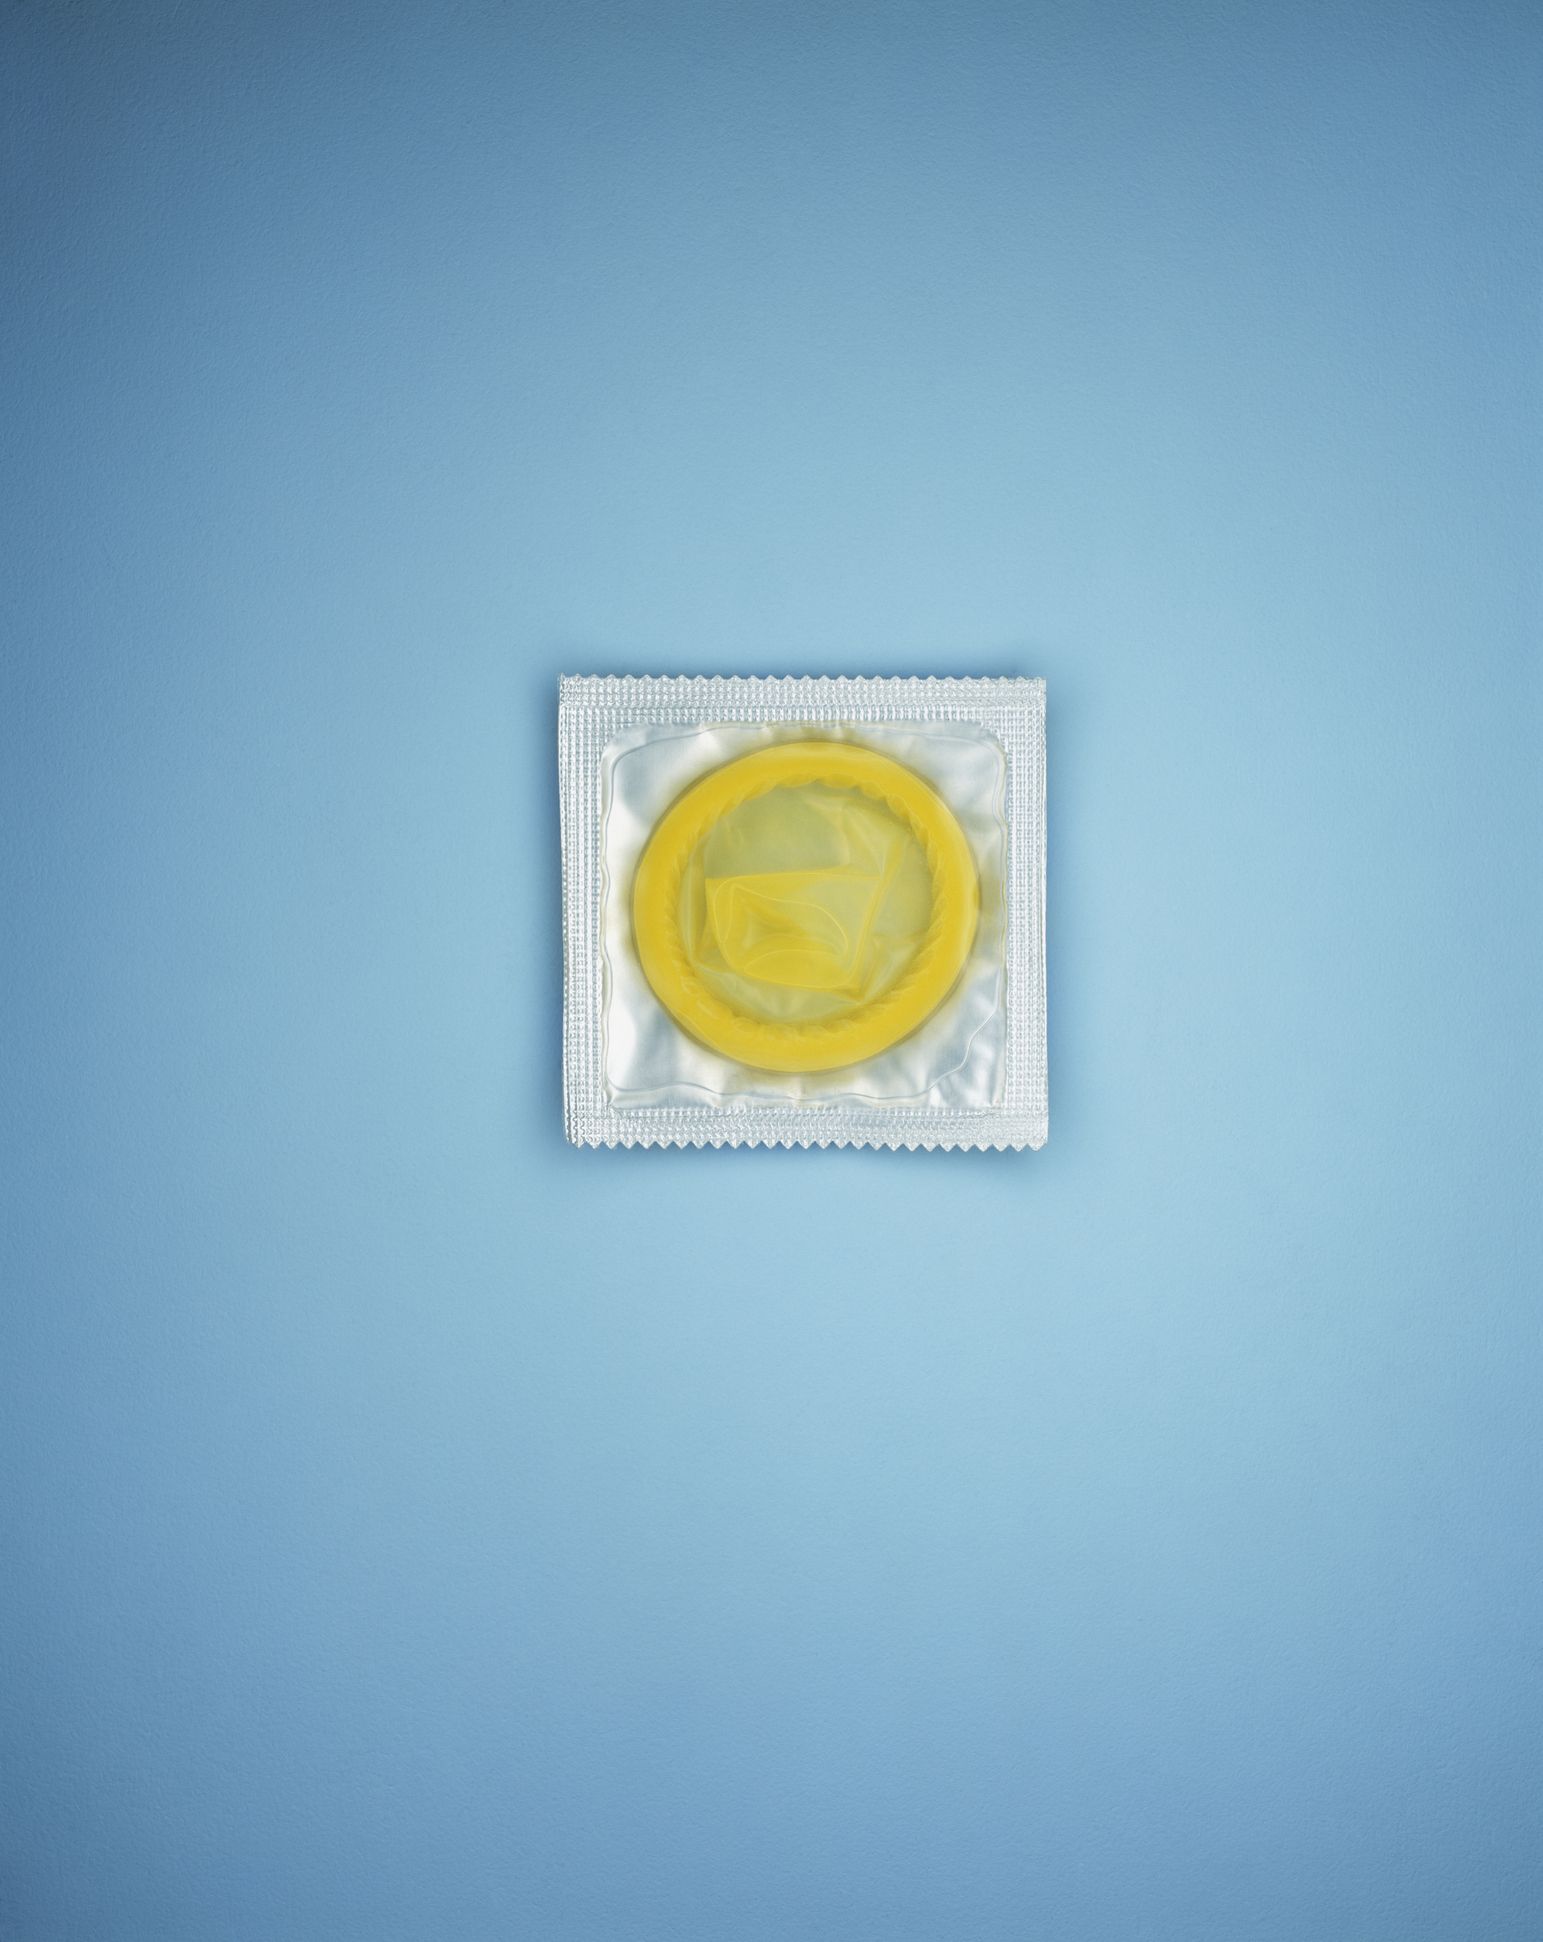 10 Best Condoms to Buy in 2022